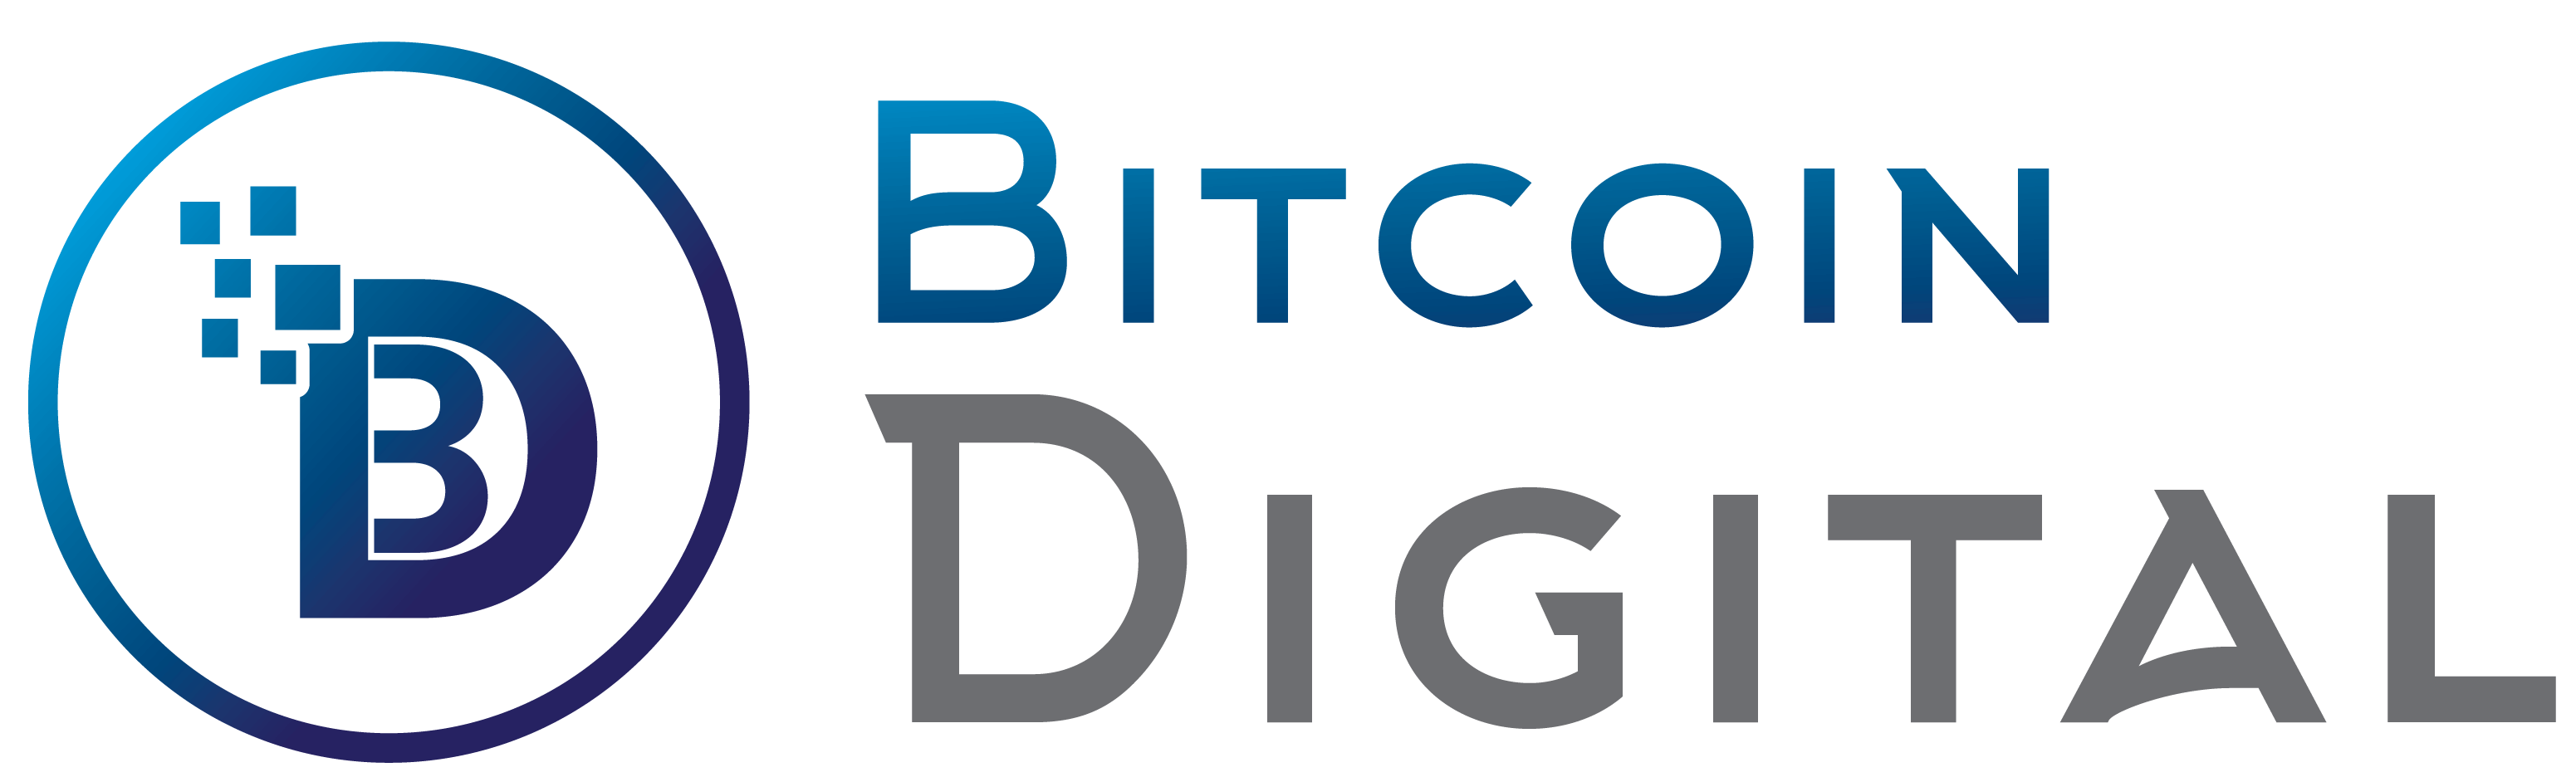 Bitcoin Digital - Bitcoin Digital Ekibi